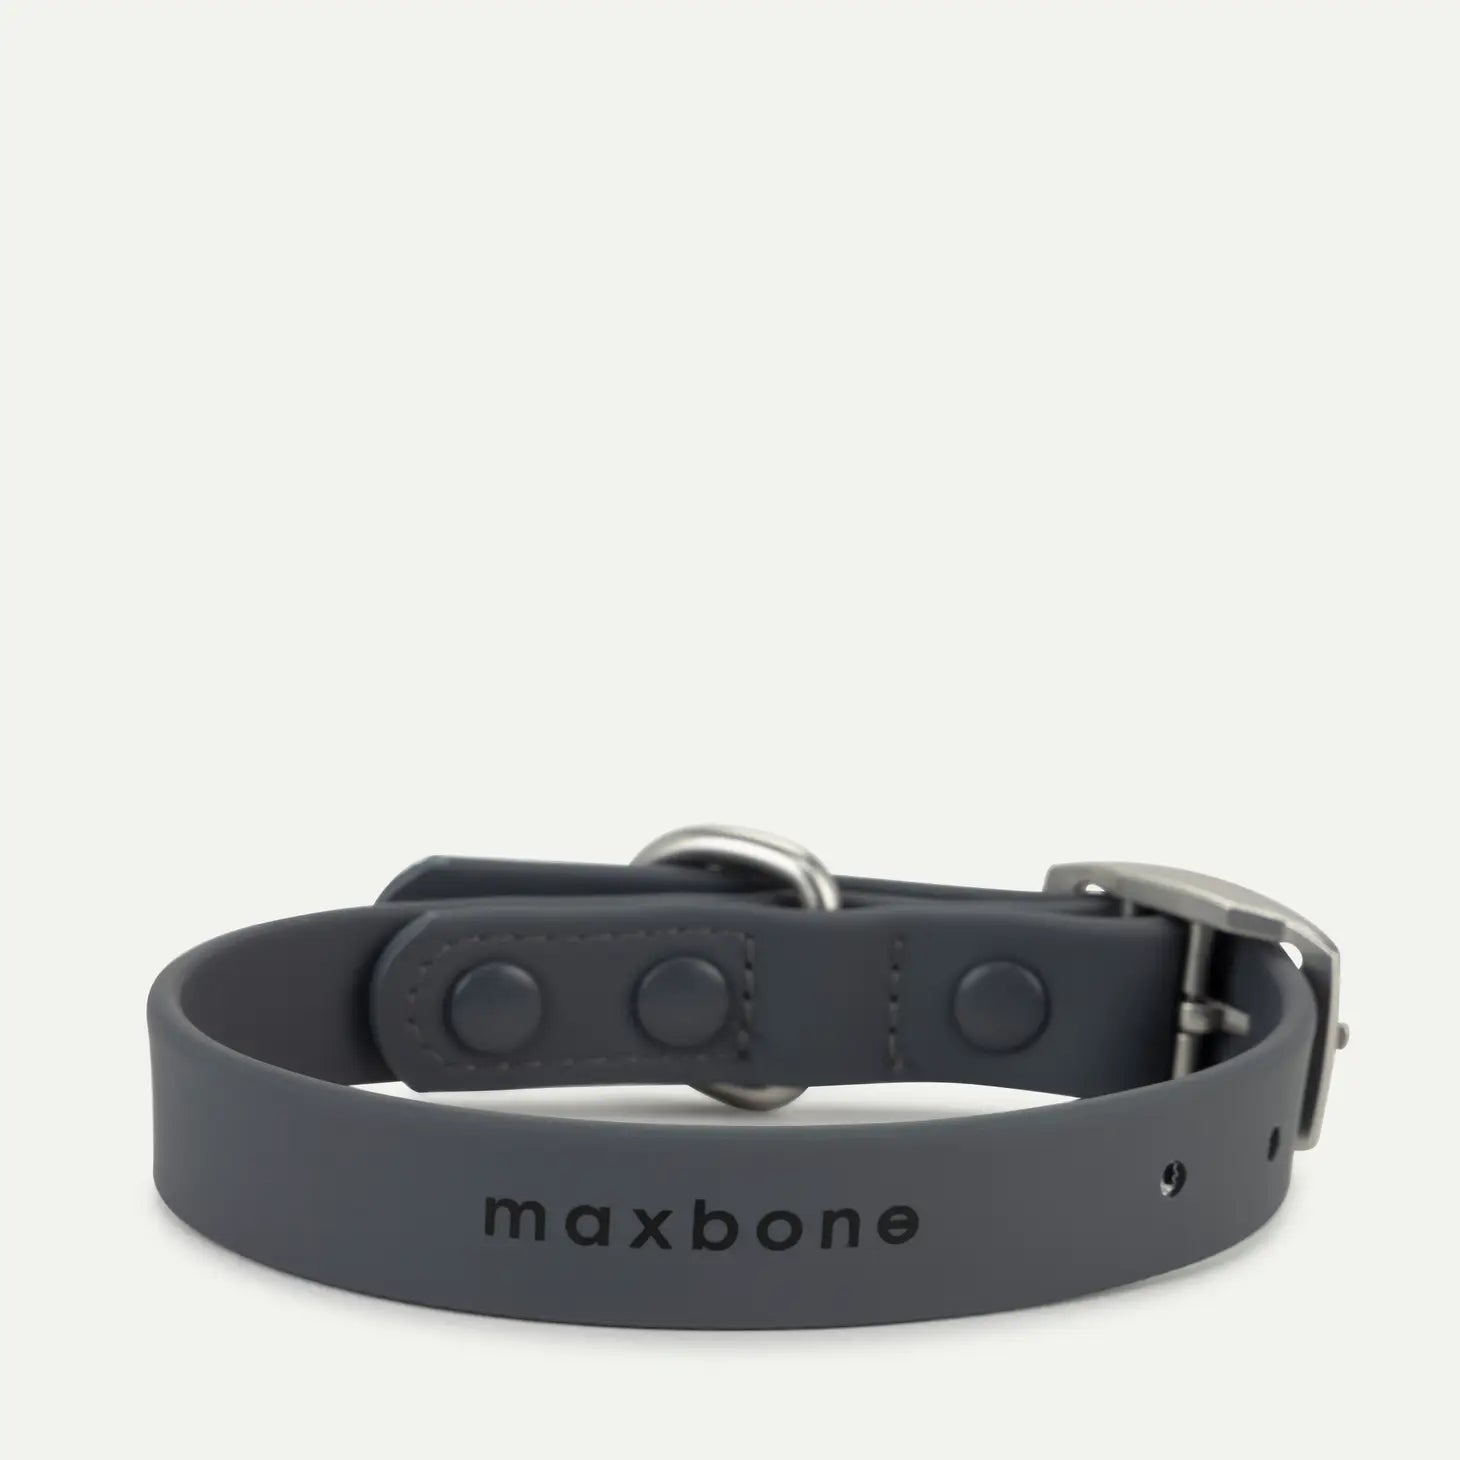 maxbone - Hazel Dog Collar - CHARCOAL